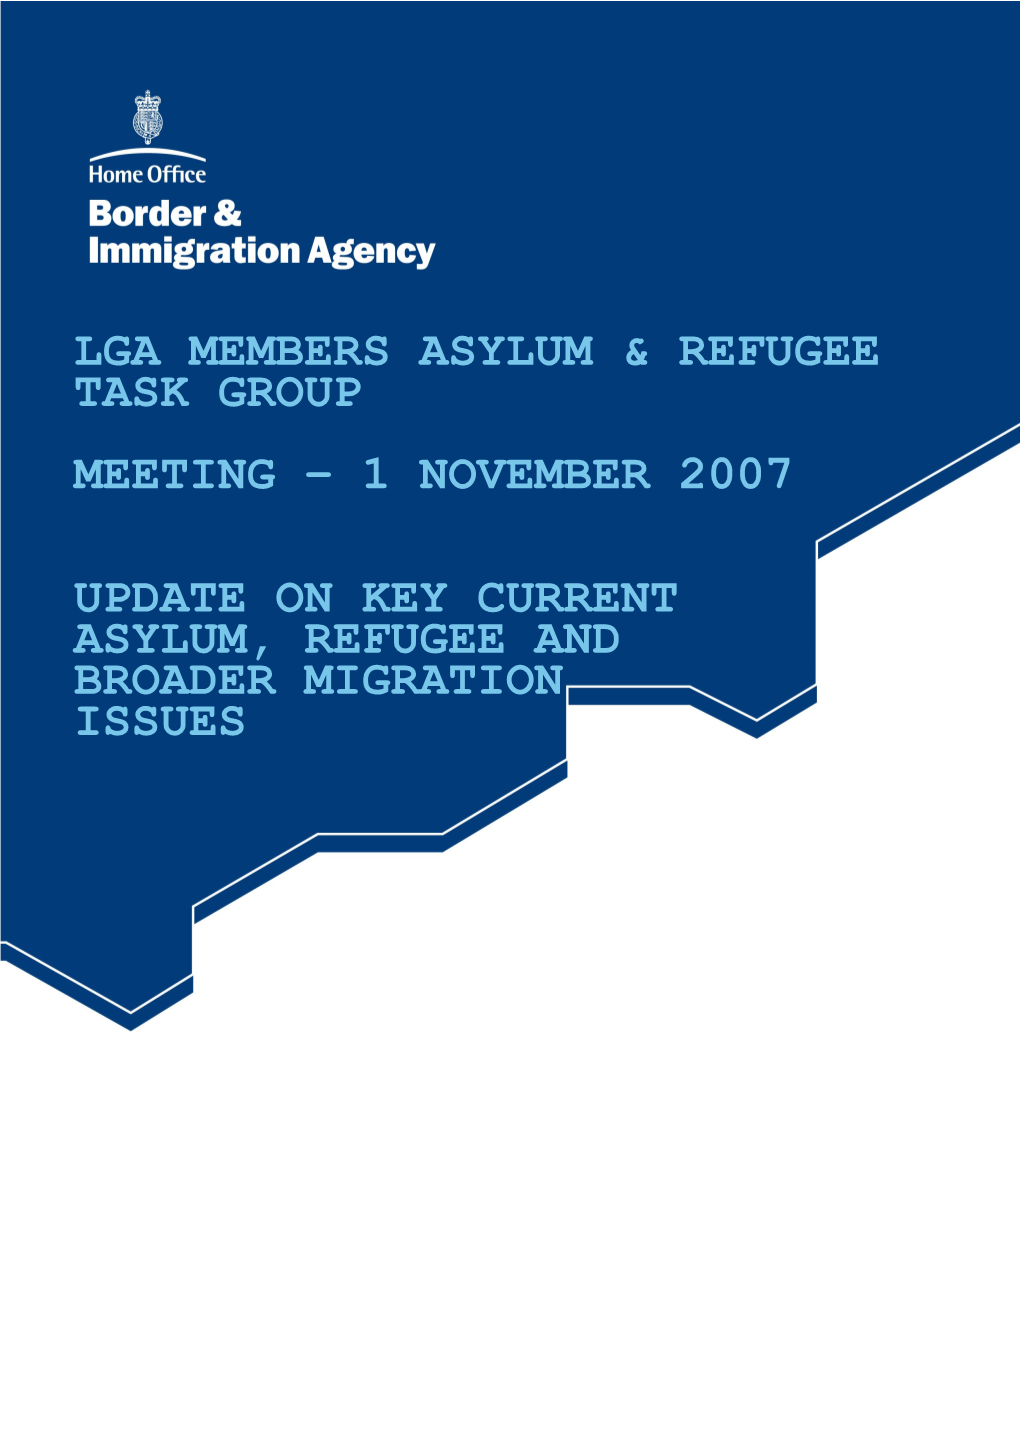 Lga Members Asylum & Refugee Task Group